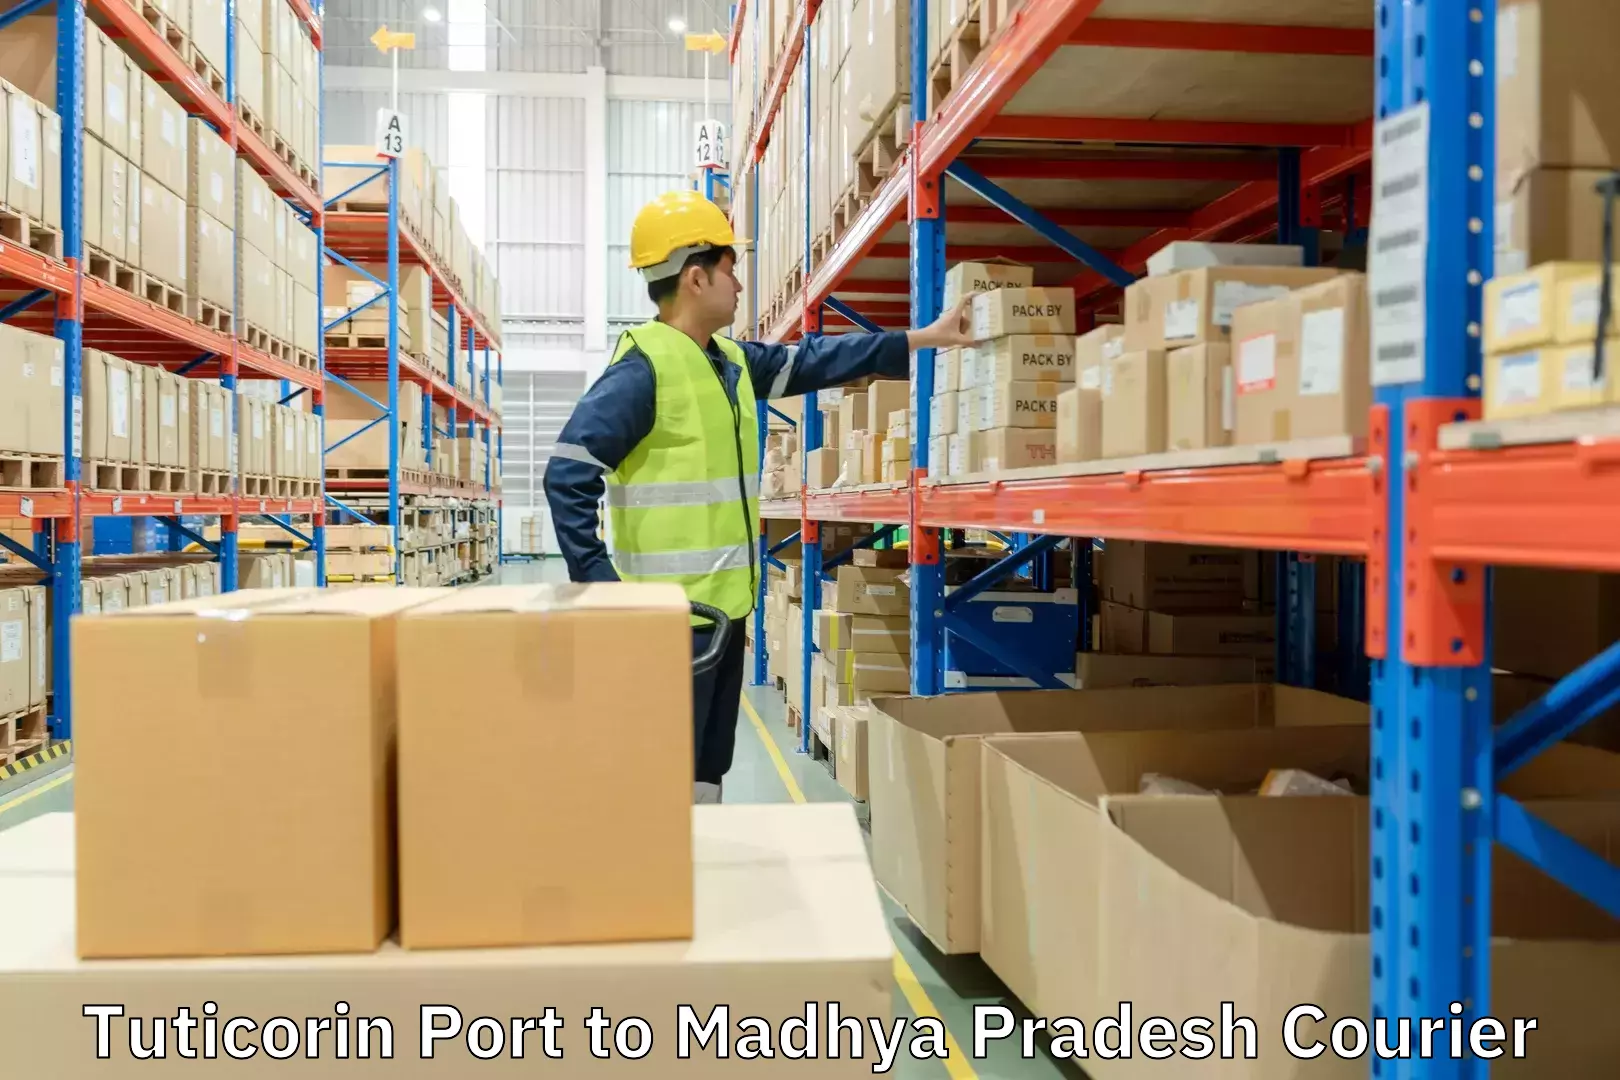 Fast shipping solutions Tuticorin Port to Madhya Pradesh